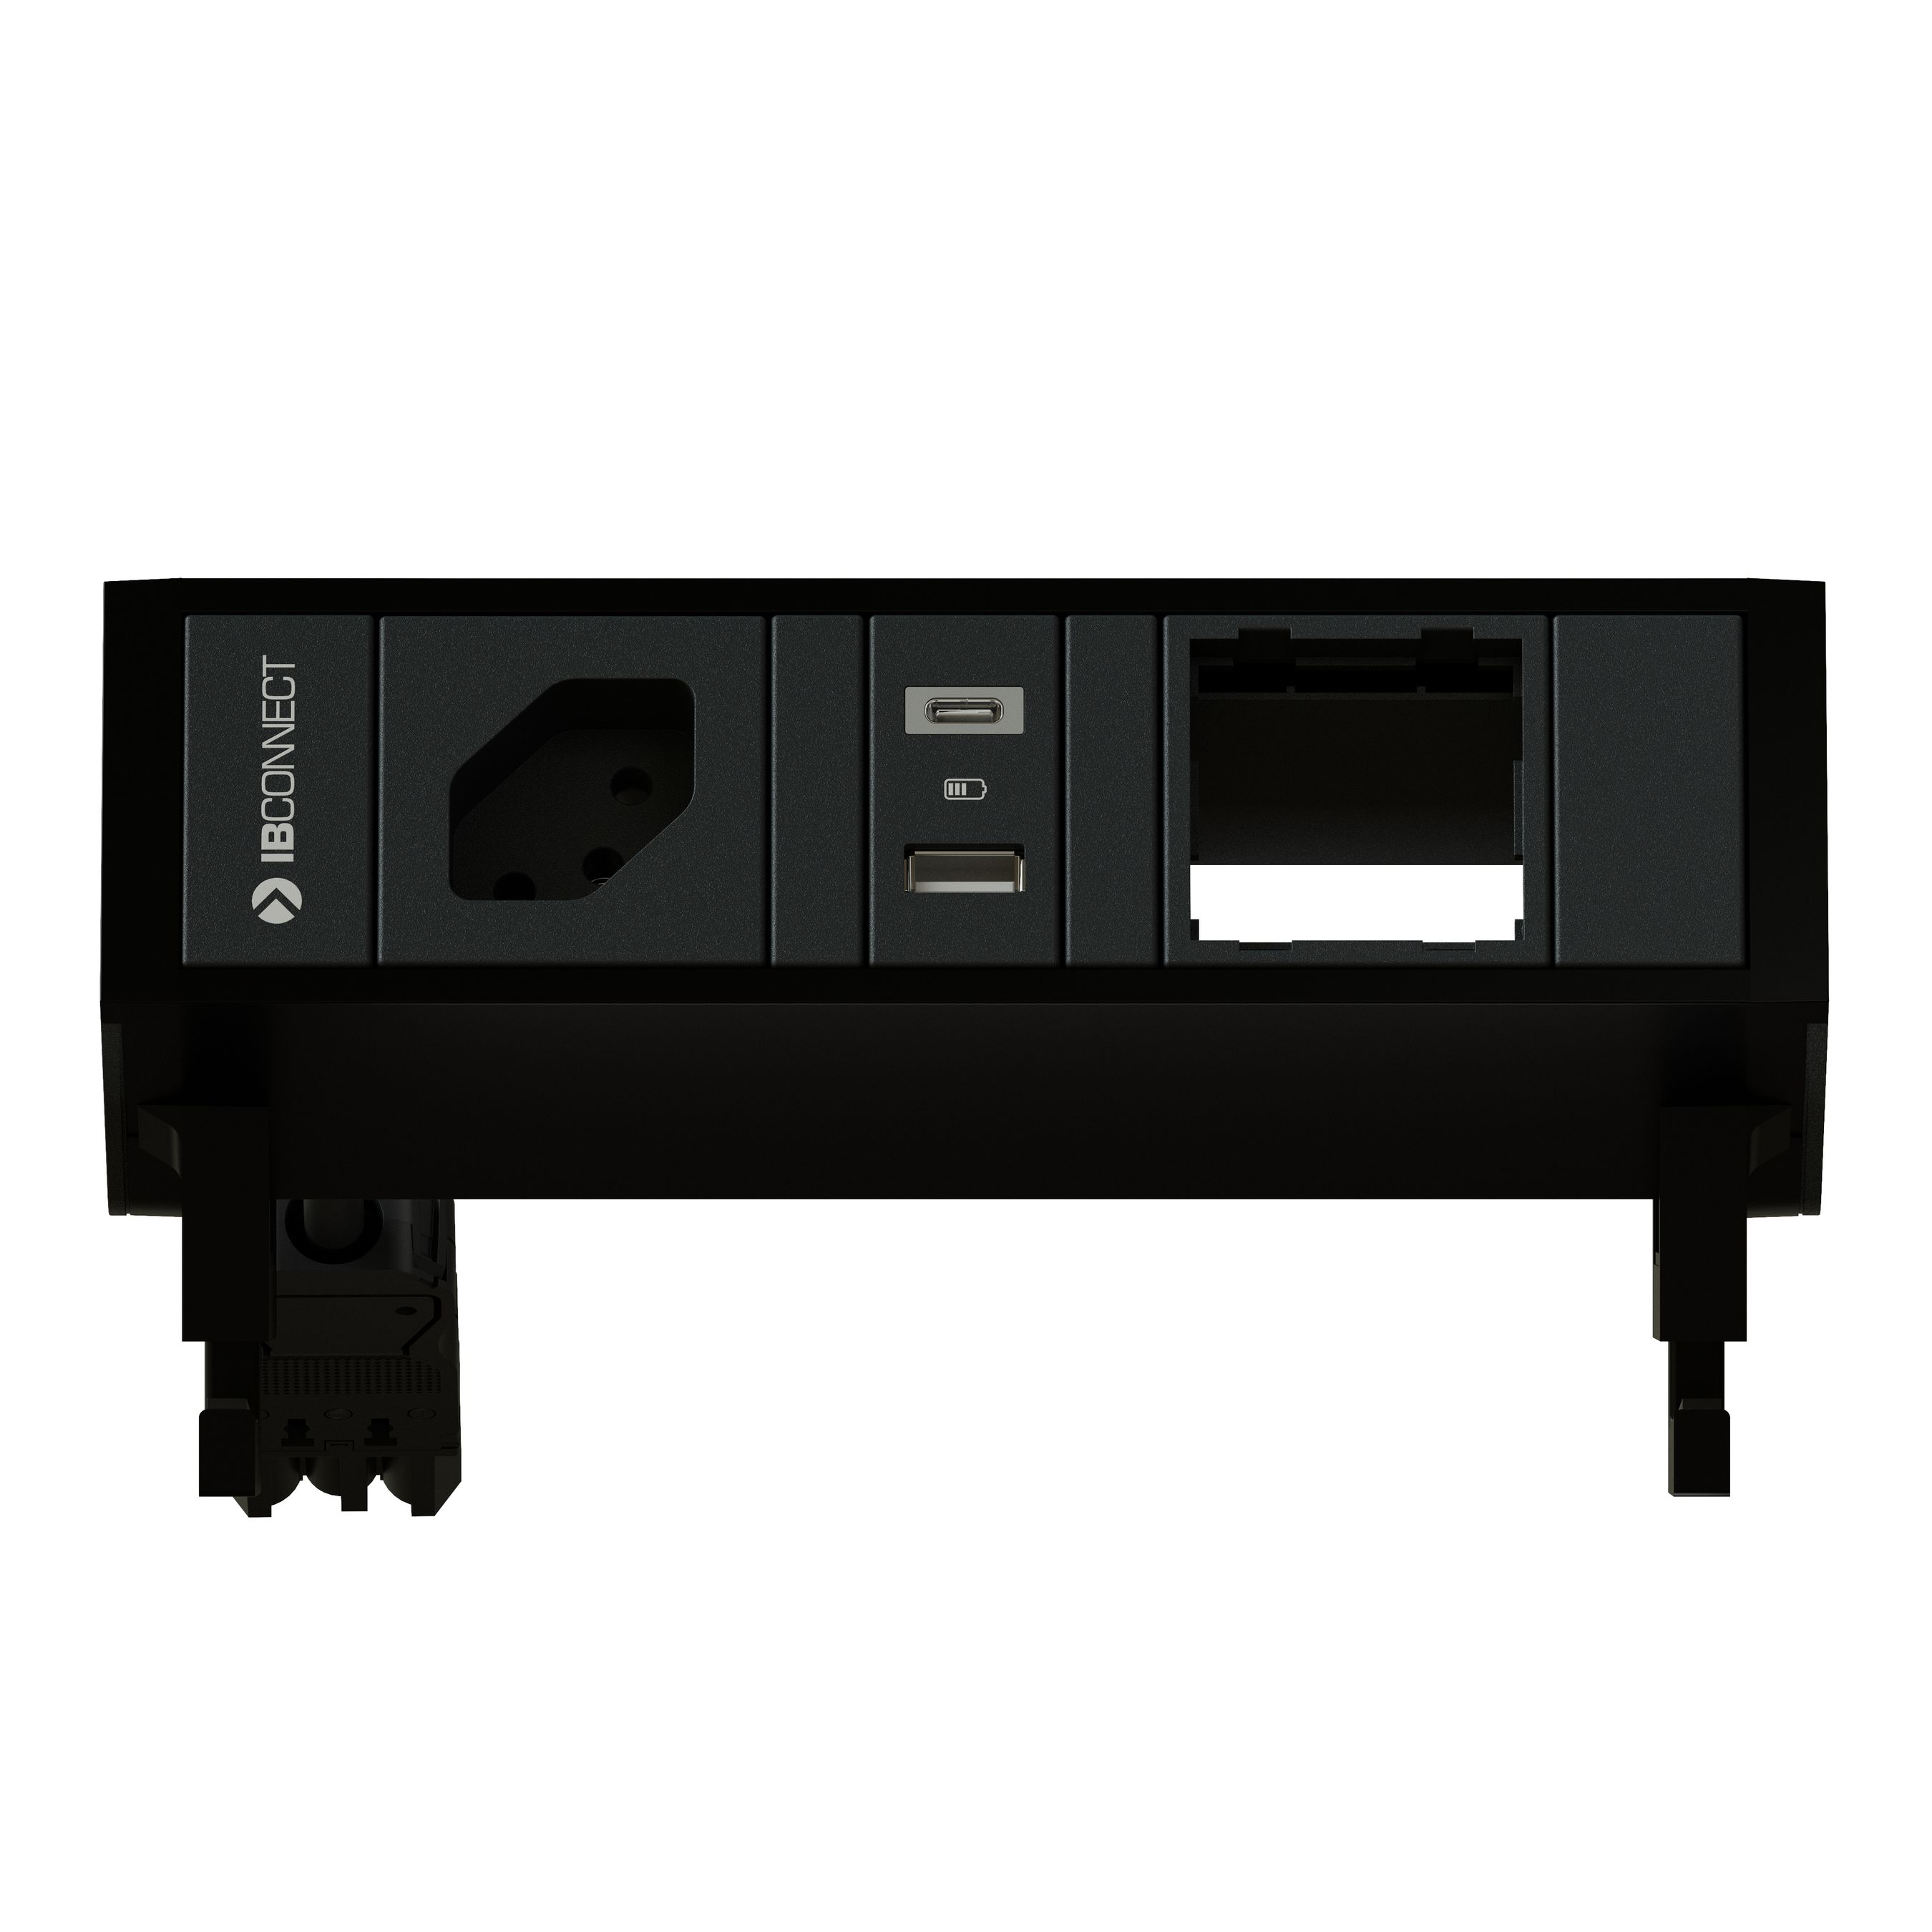 SUPRA presa multipla nero 1x tipo 13 1x USB-A/C 1x modulo vuoto